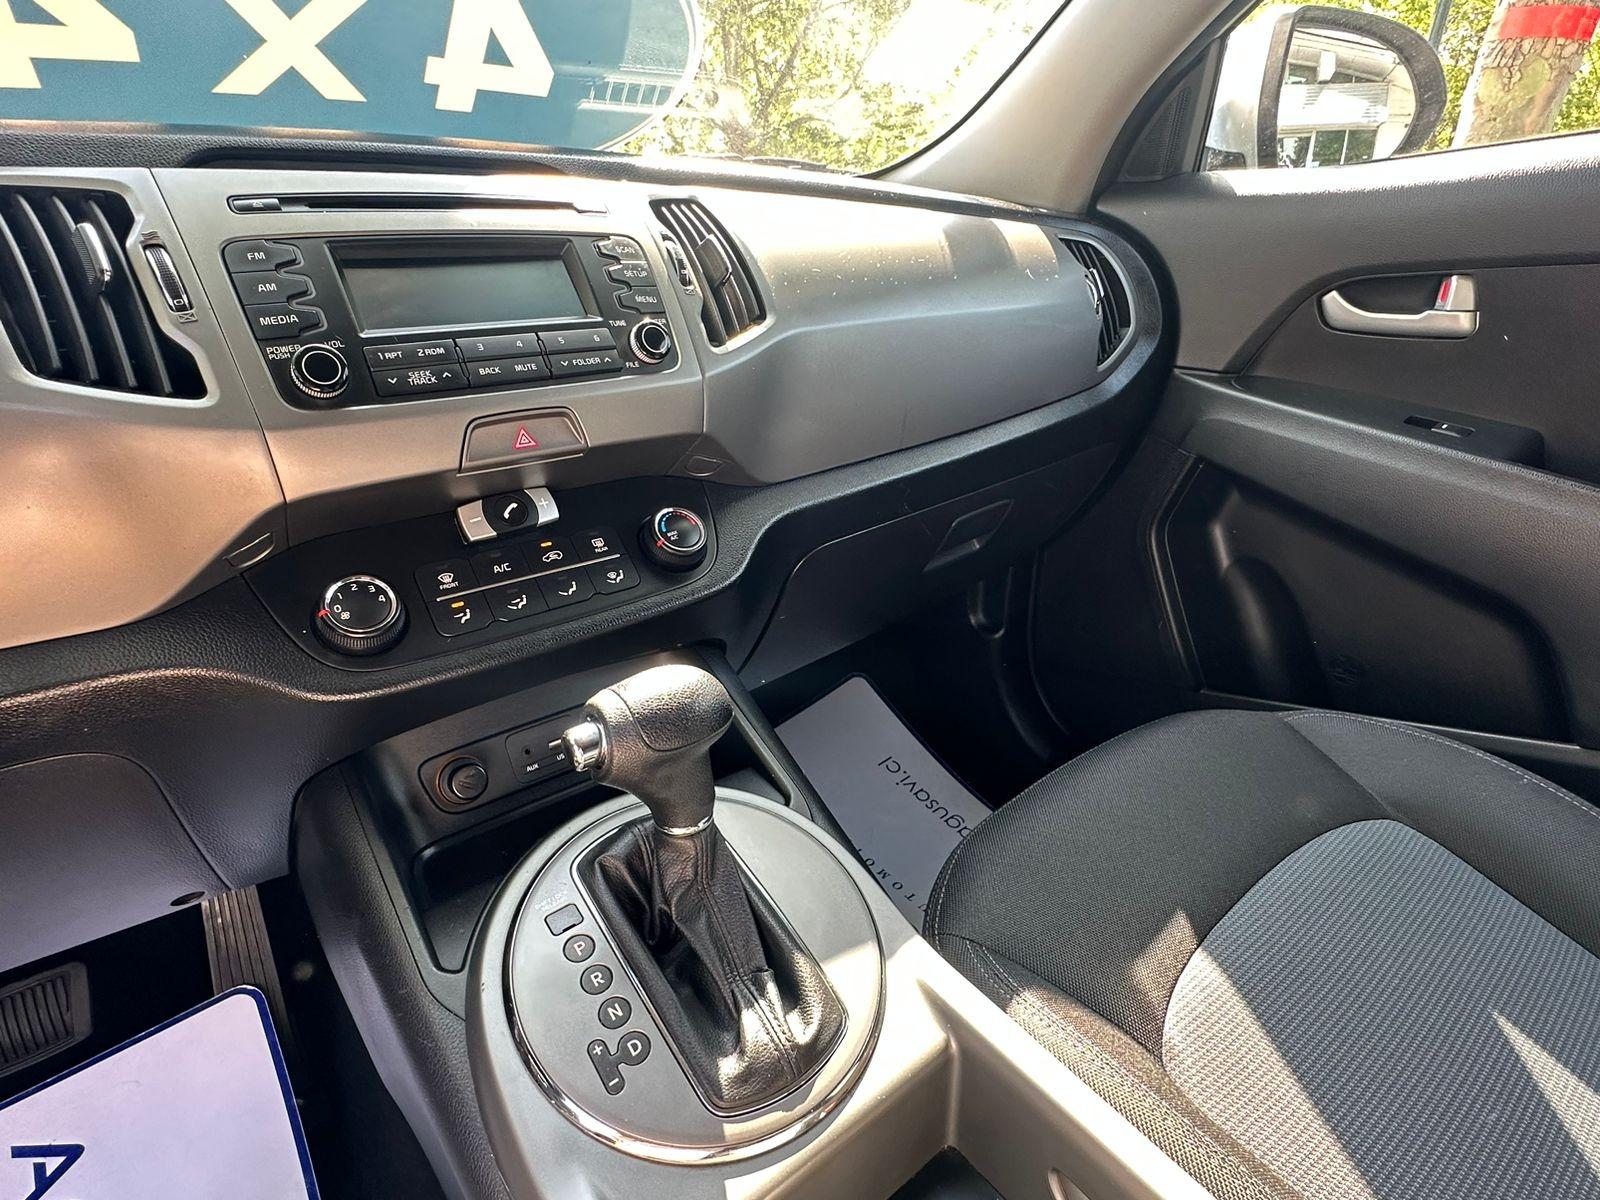 KIA SPORTAGE 2.0 LX Auto AC DAB 4WD  2016 AUTOMATICA / 4X4 - AGUSAVI